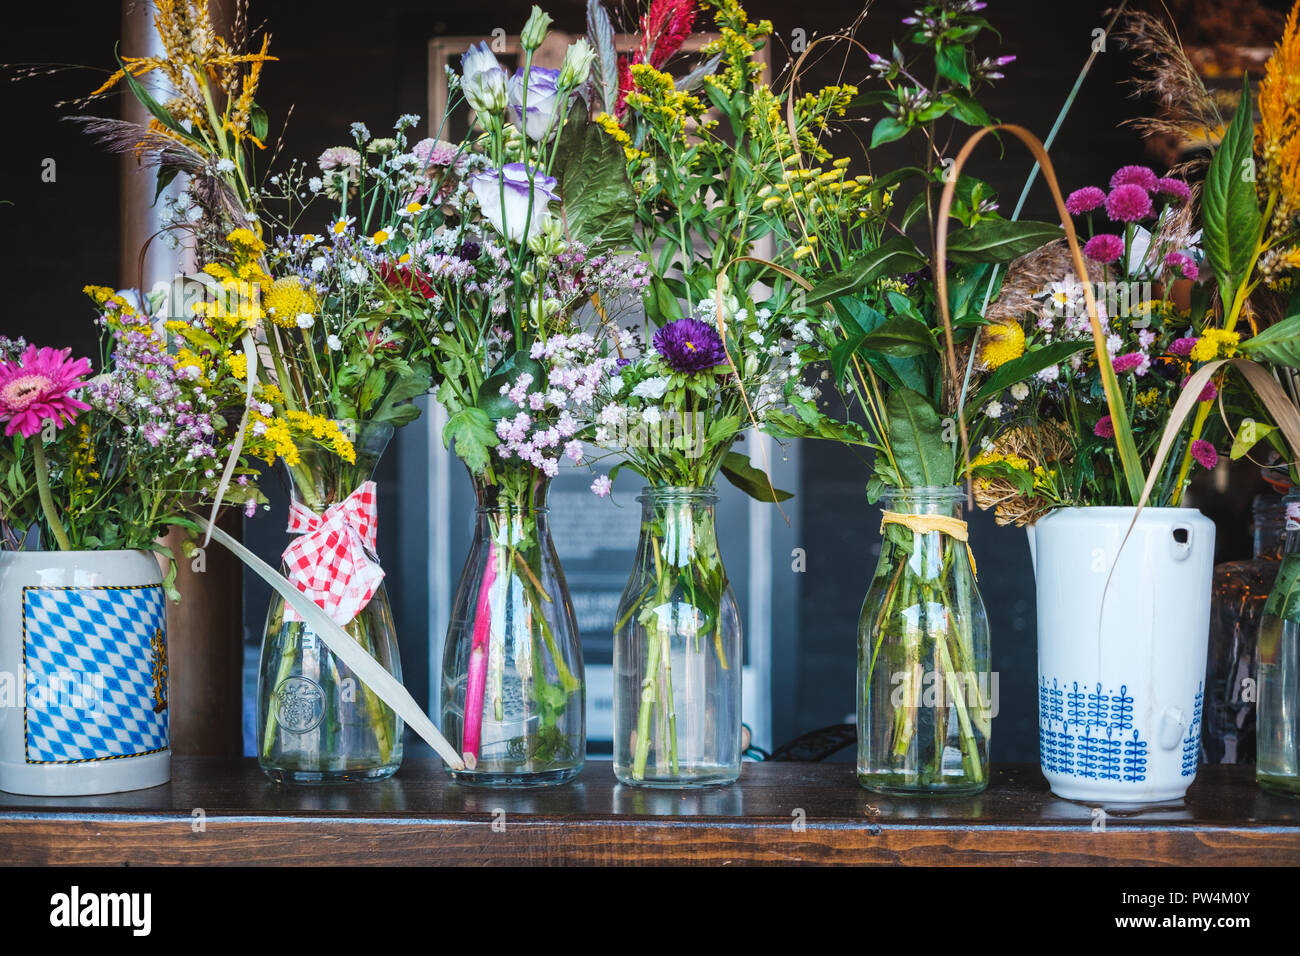 Bouquet de fleurs dans un vase à fleurs - bouquets, dans les verres sur la table - compteur Banque D'Images